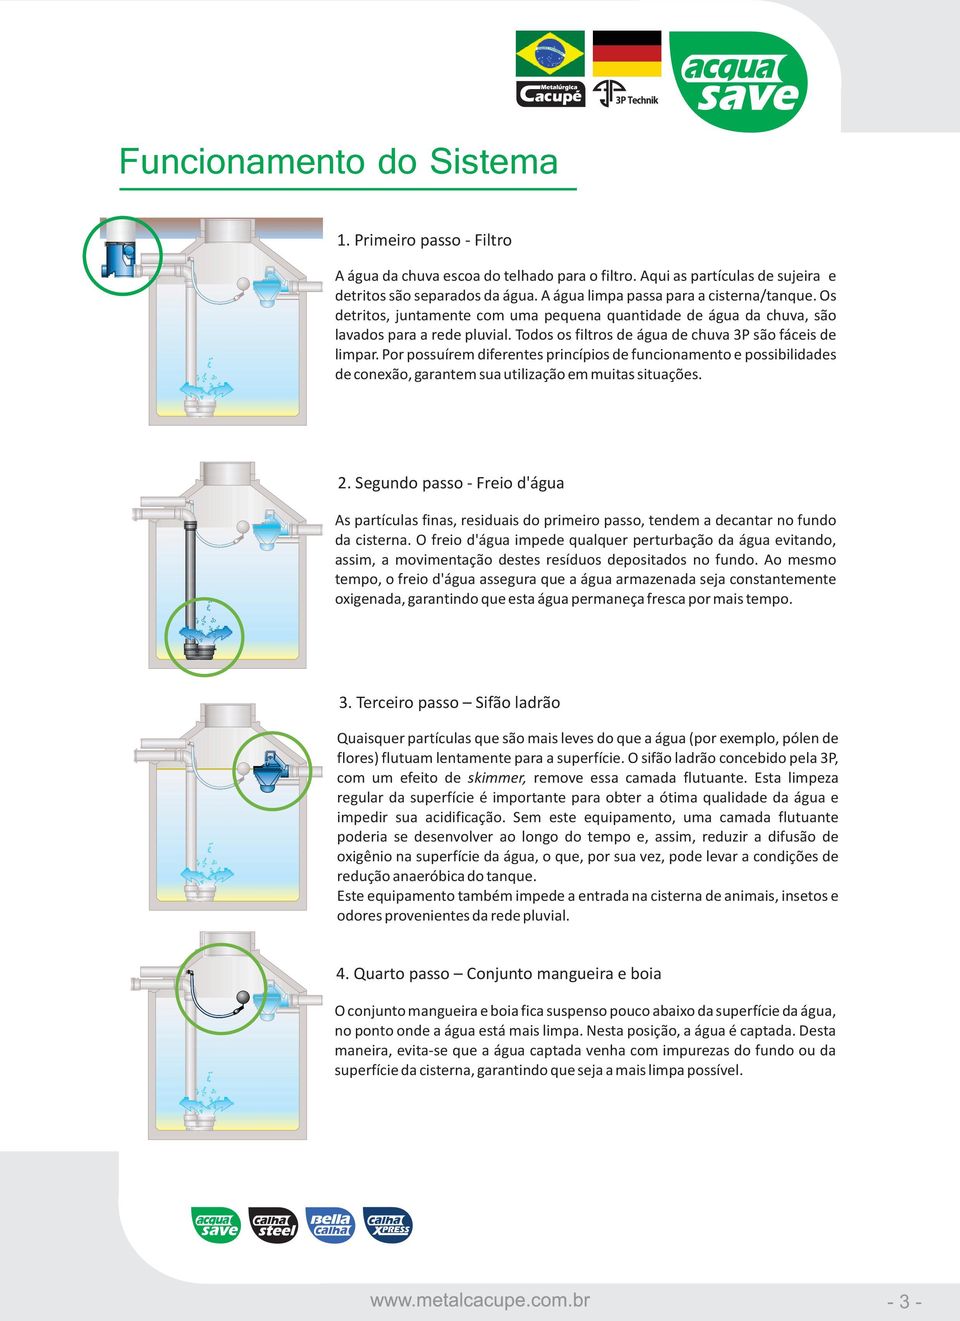 Todos os filtros de água de chuva 3P são fáceis de limpar. Por possuírem diferentes princípios de funcionamento e possibilidades de conexão, garantem sua utilização em muitas situações. 2.